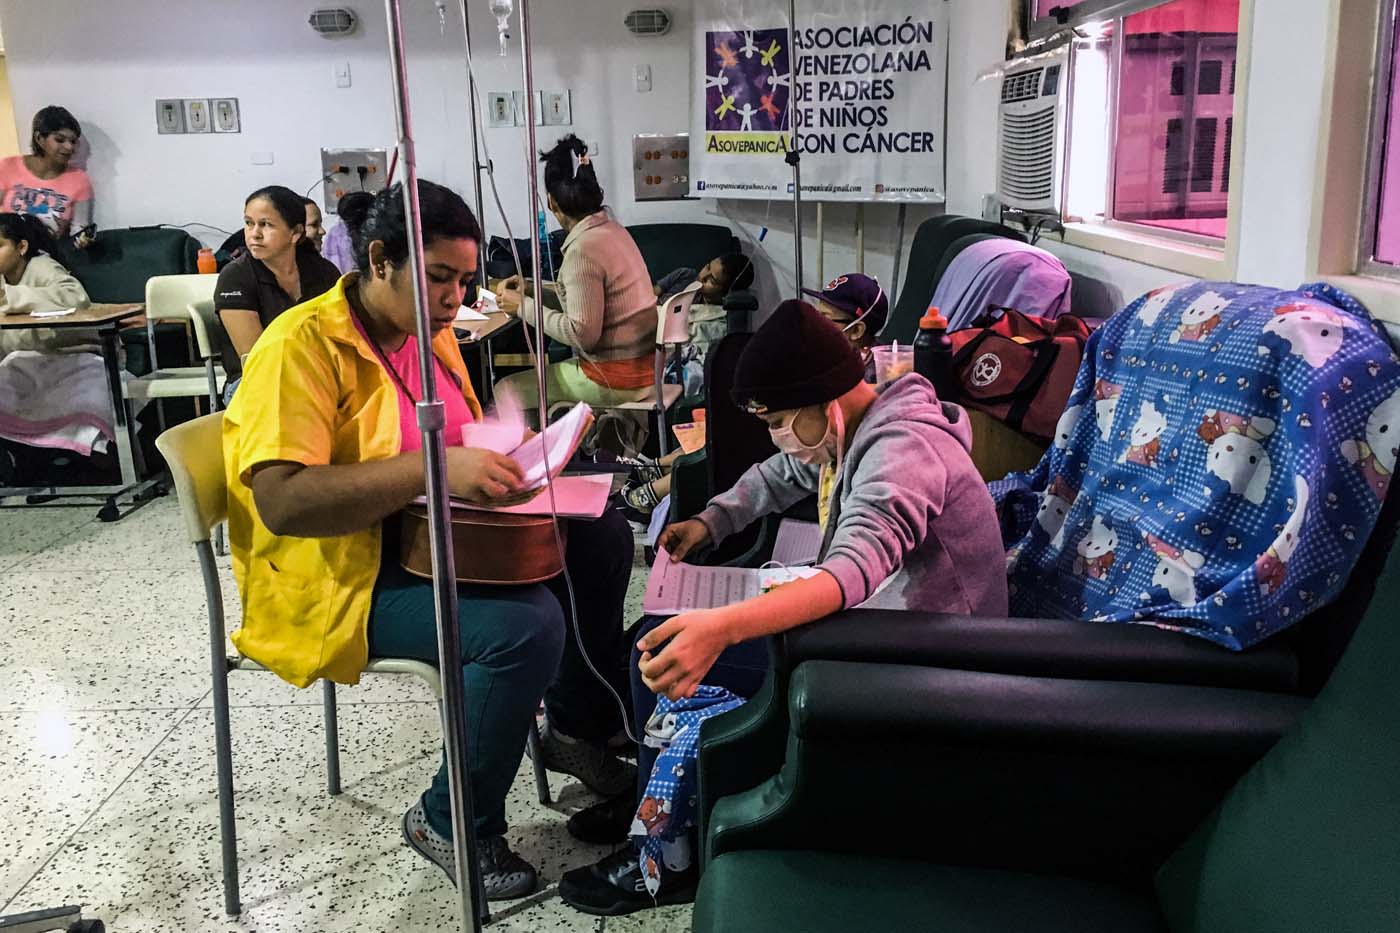 Veinte niños venezolanos con cáncer morirán si no les realizan trasplantes con urgencia